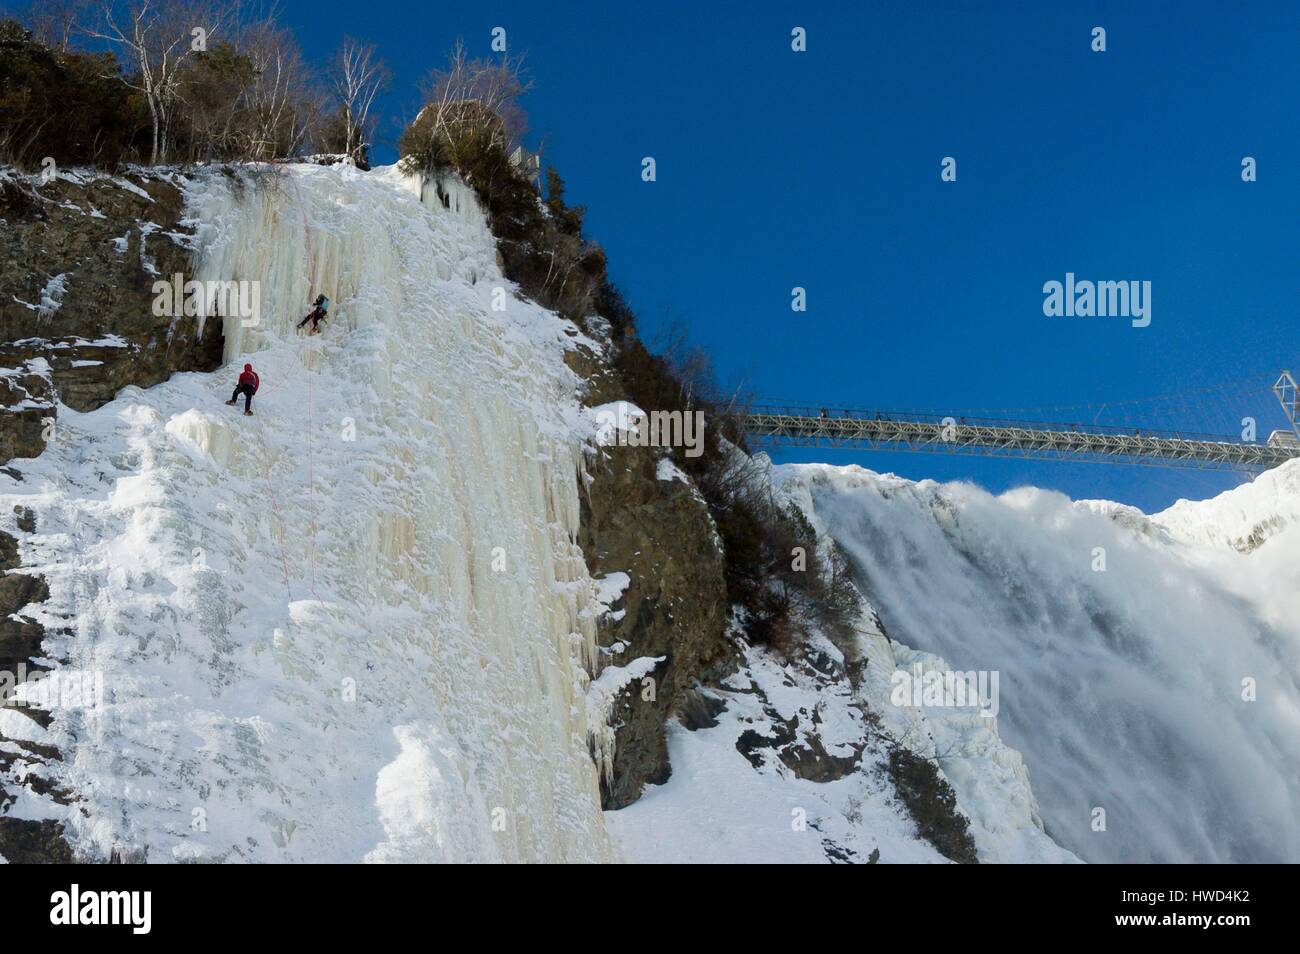 Canada, Province de Québec, ville de Québec, le Parc de la Chute-Montmorency, escalade sur glace Banque D'Images